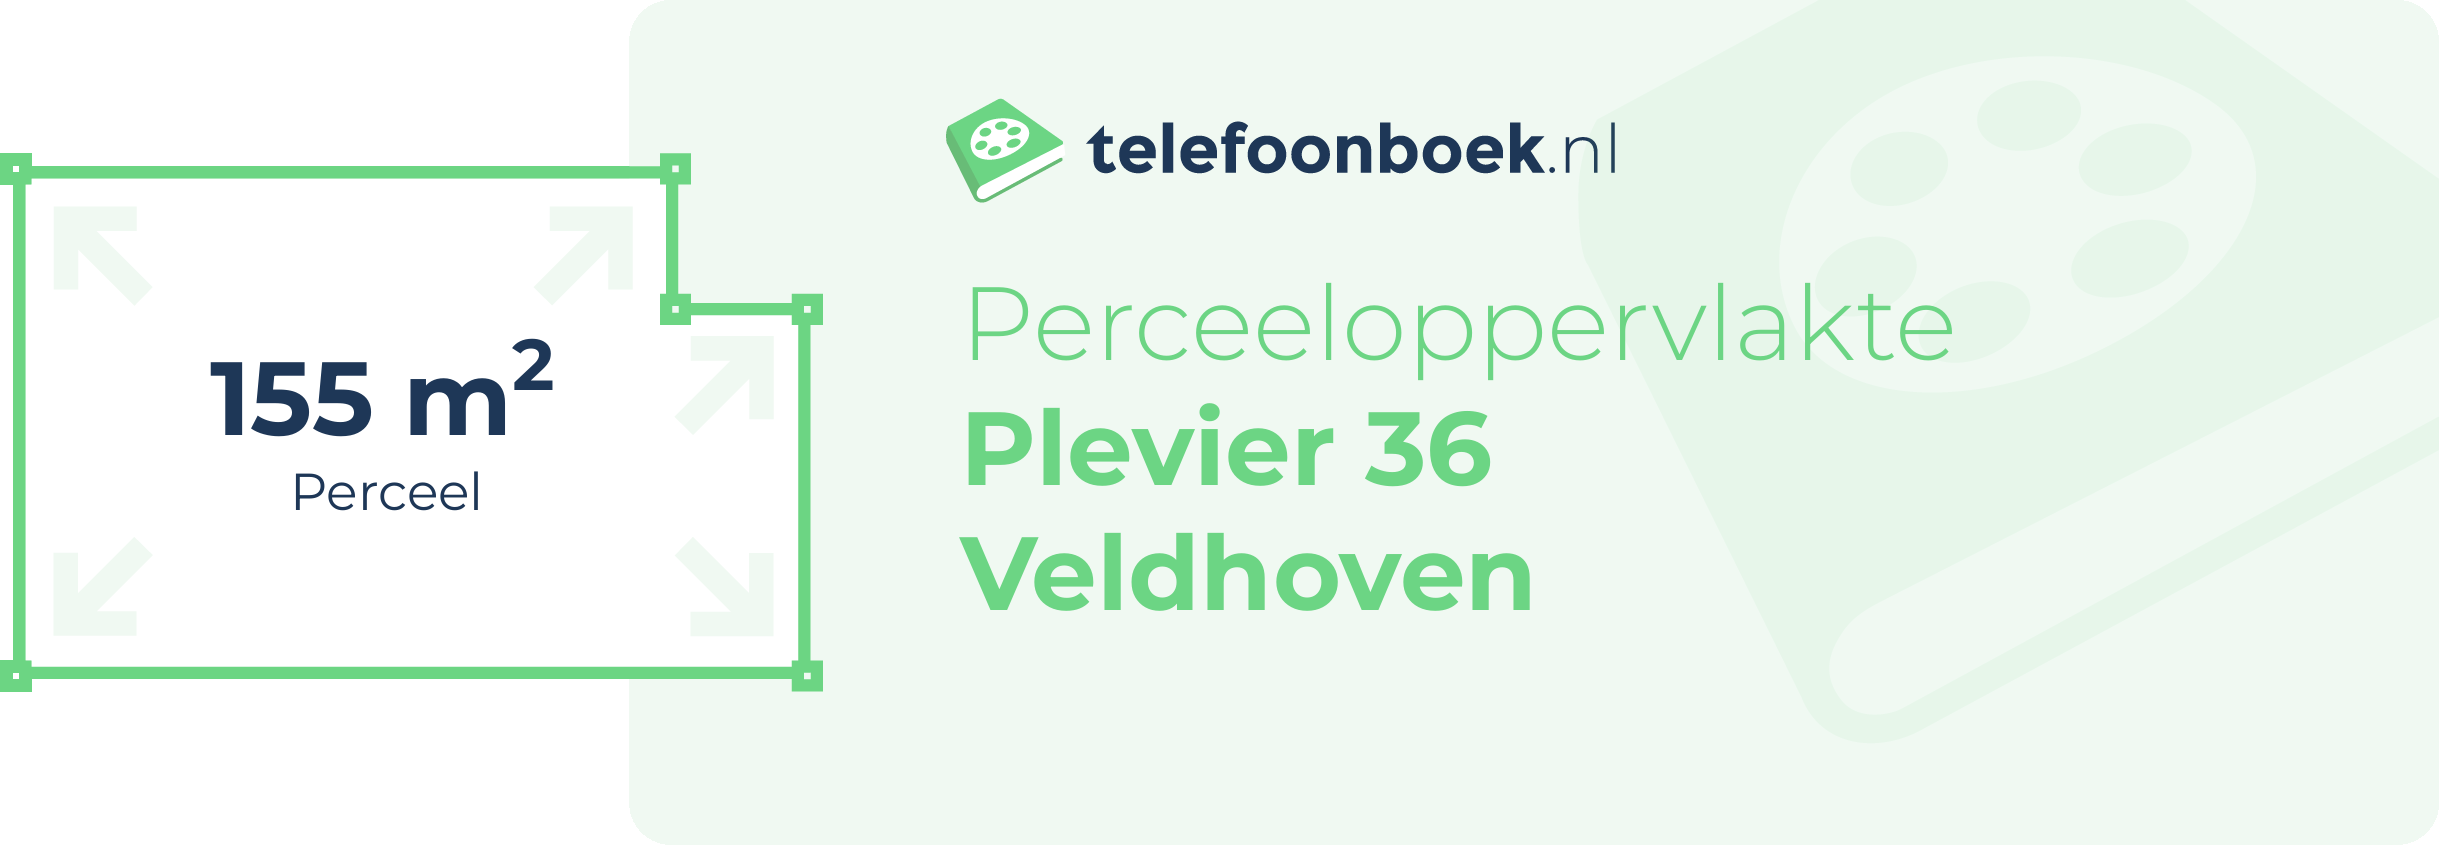 Perceeloppervlakte Plevier 36 Veldhoven